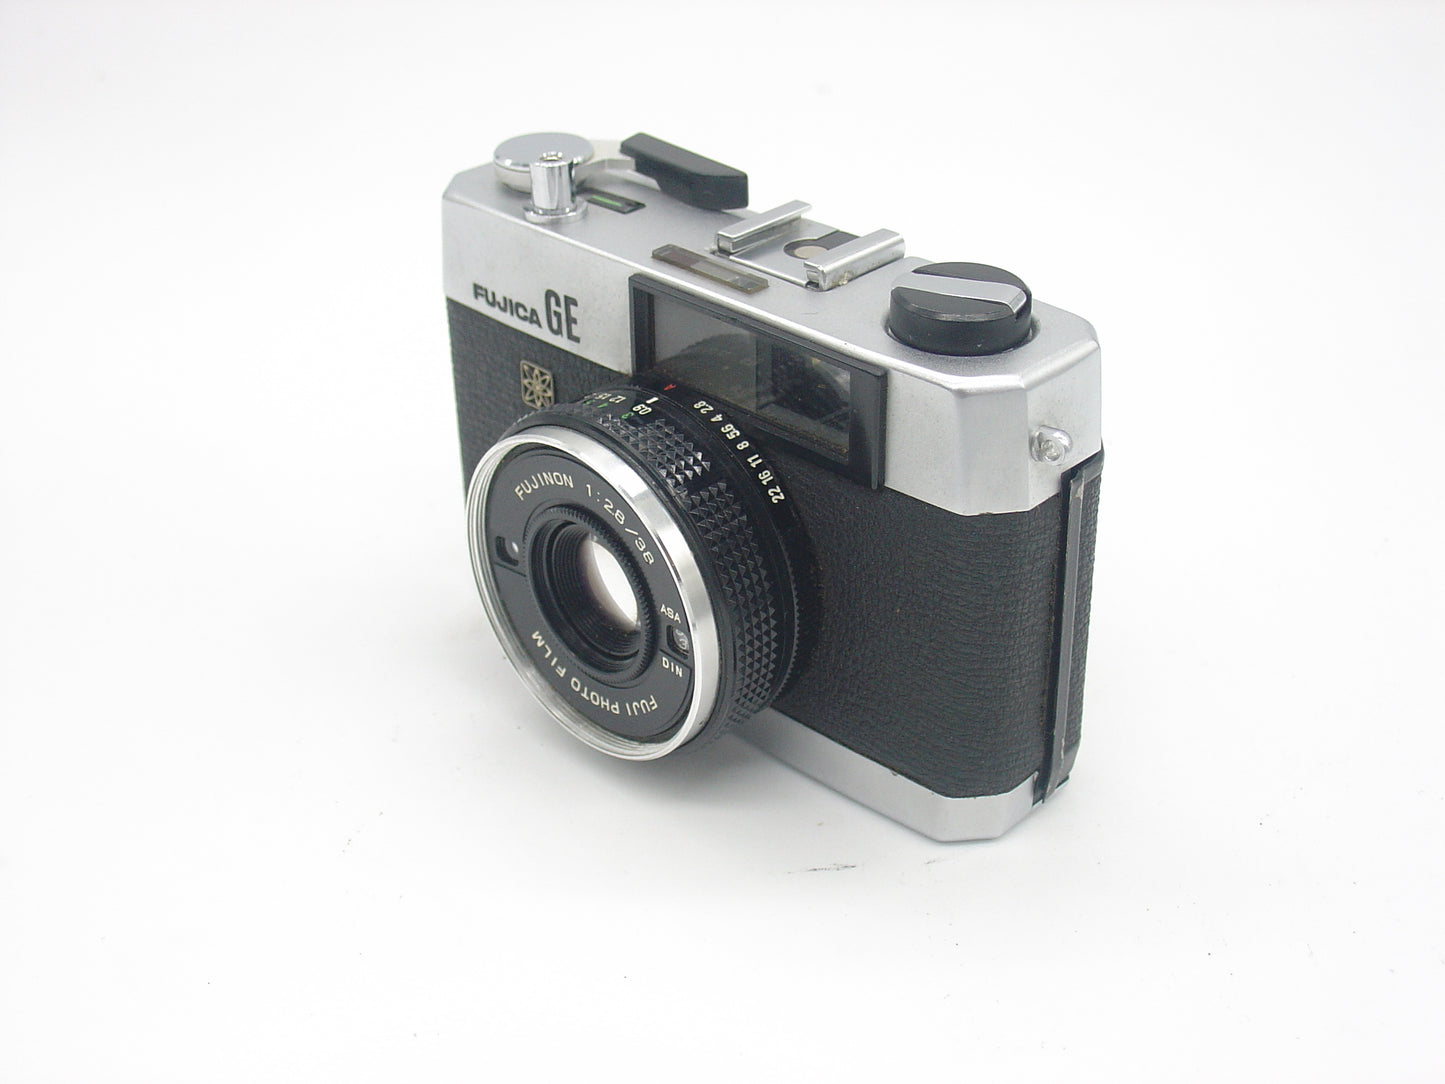 Fujica GE retro compact film camera